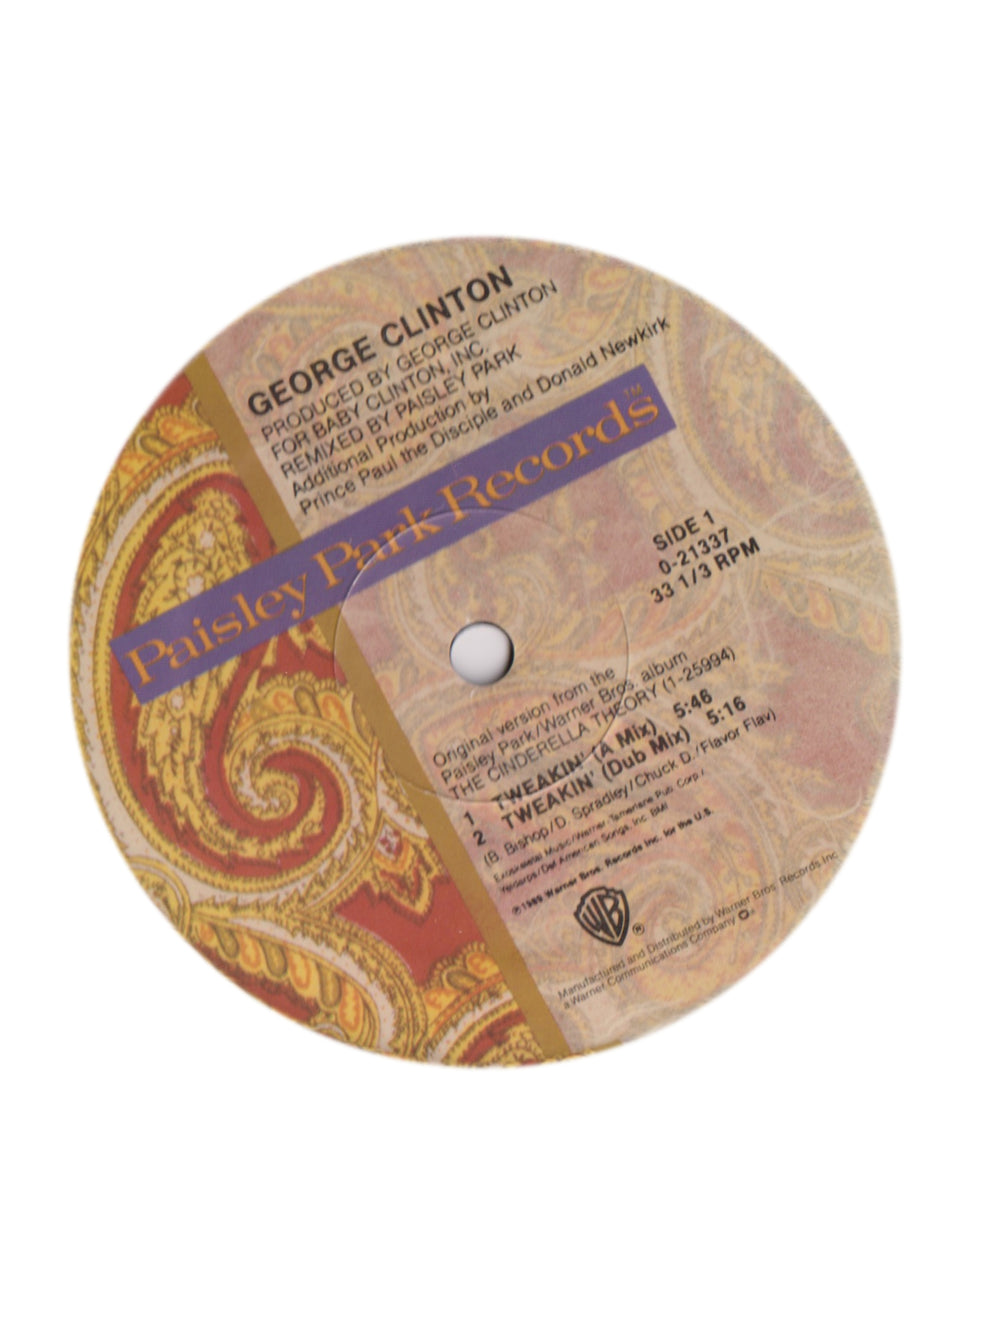 Prince – George Clinton  Tweakin' Vinyl 12"Maxi Single US Preloved : 1989